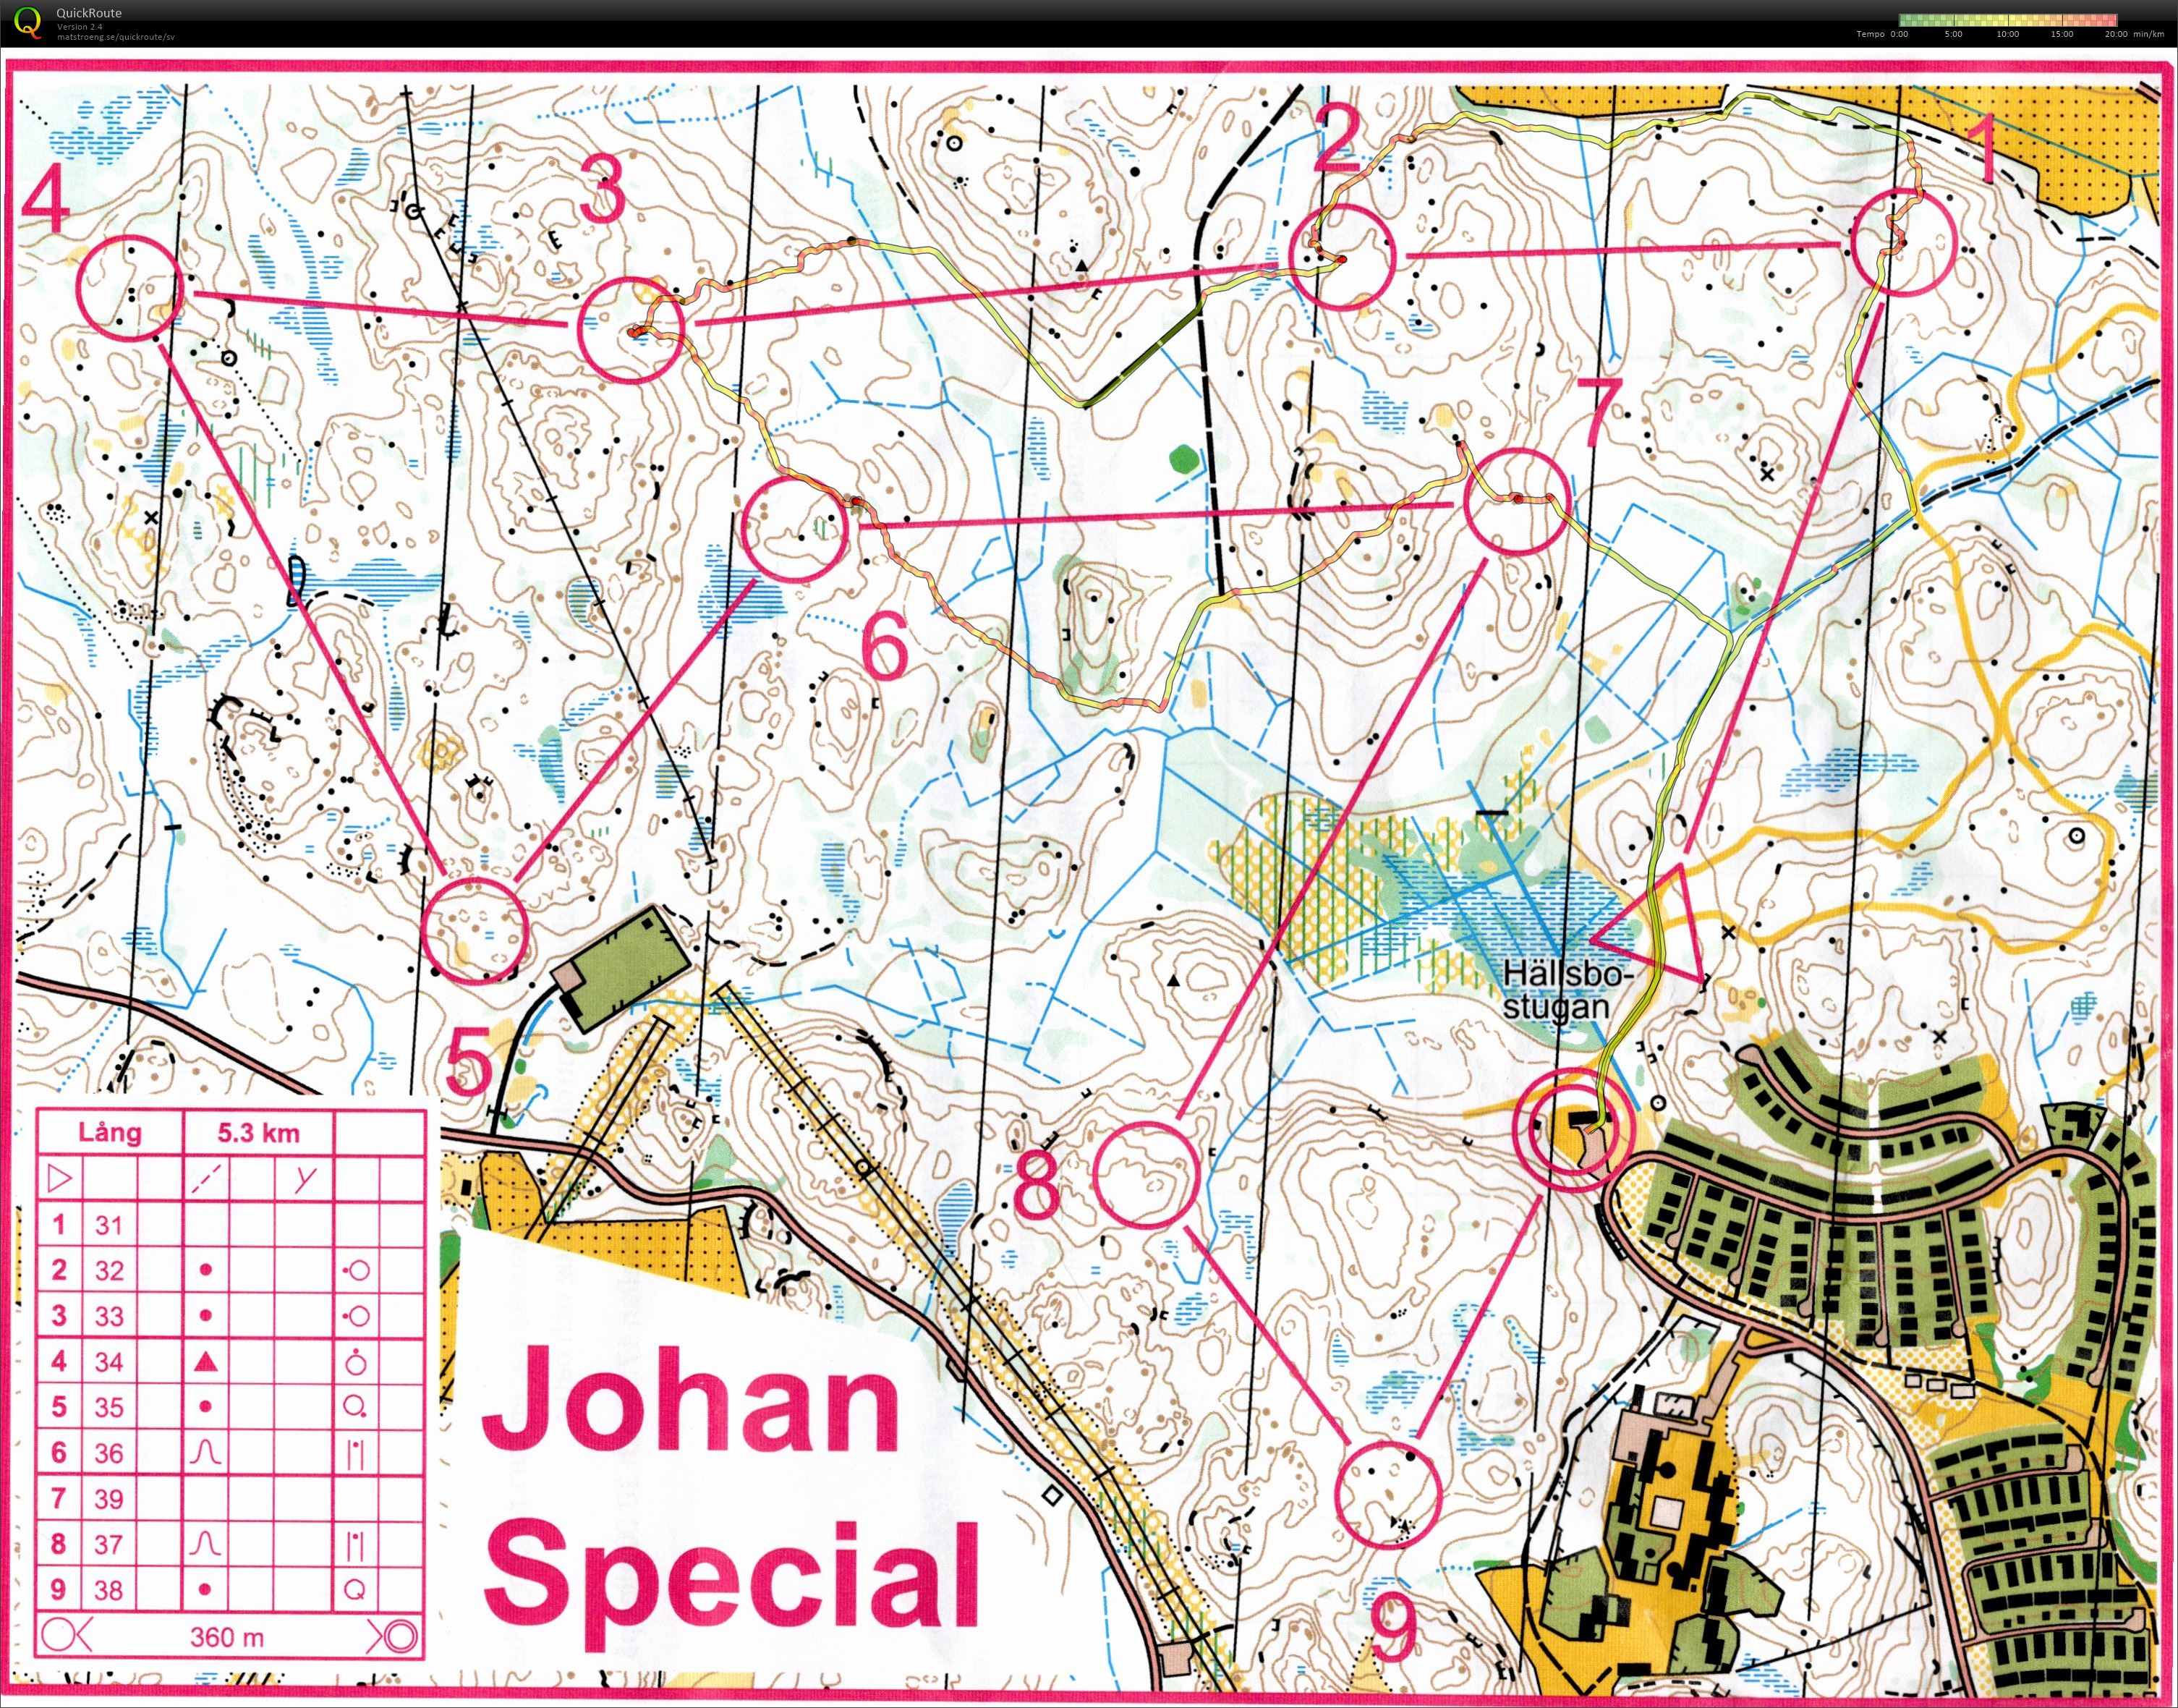 Johan Special (03-03-2019)